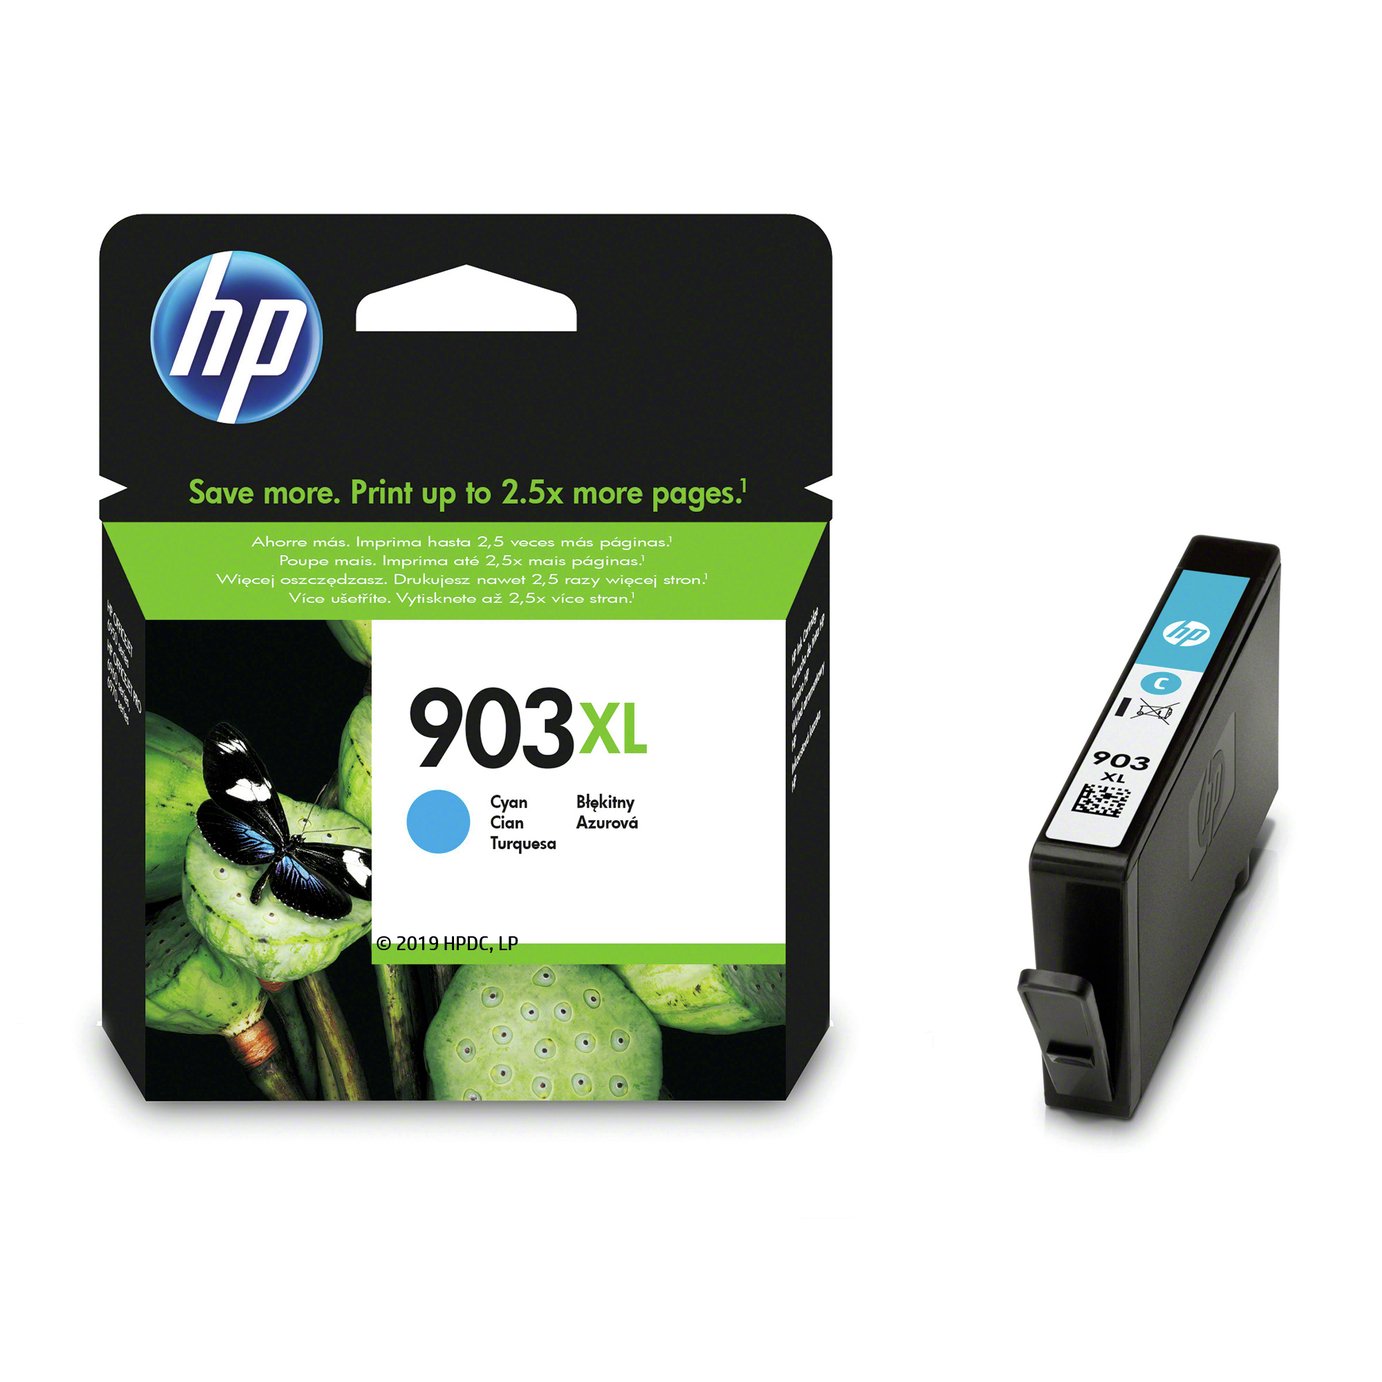 HP 903XL Yigh-Yield Original Ink Cartridge - Cyan